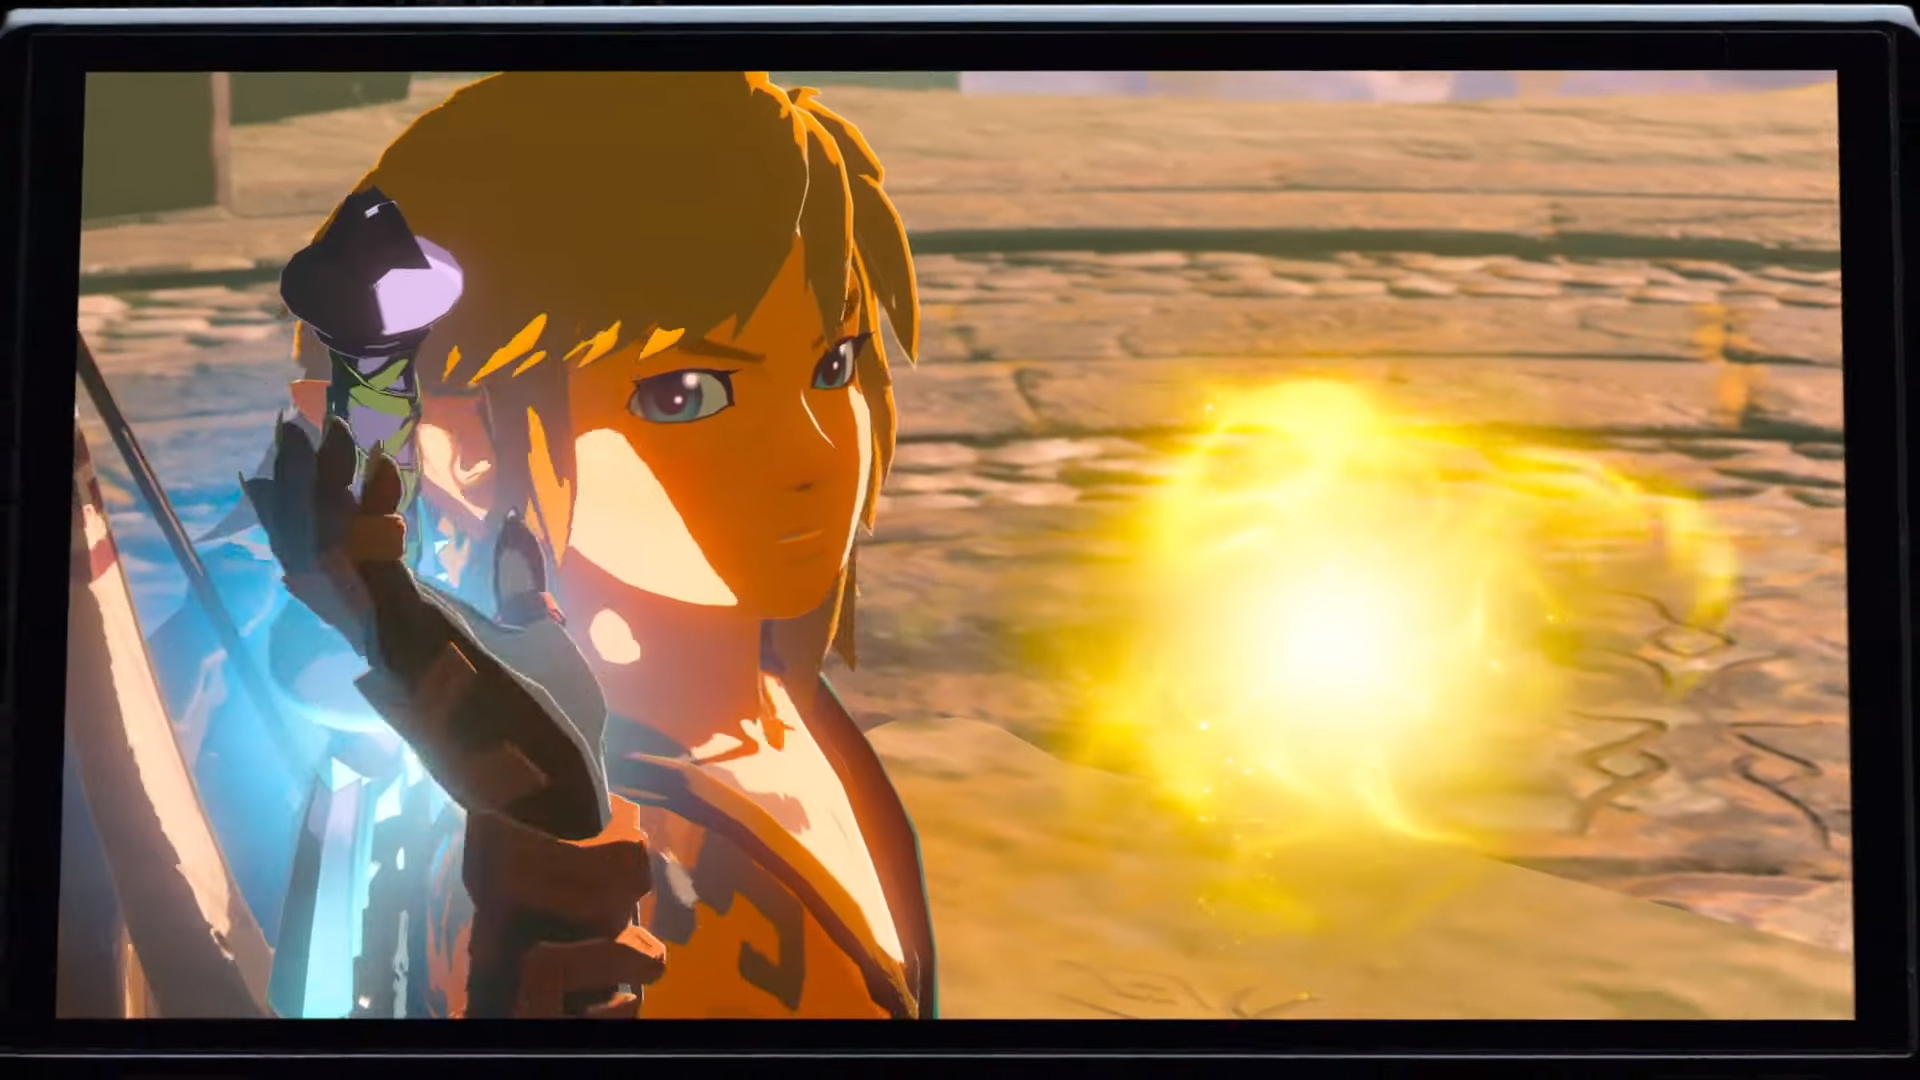 Nintendo reveals Legend of Zelda Breath of the Wild 2 gameplay